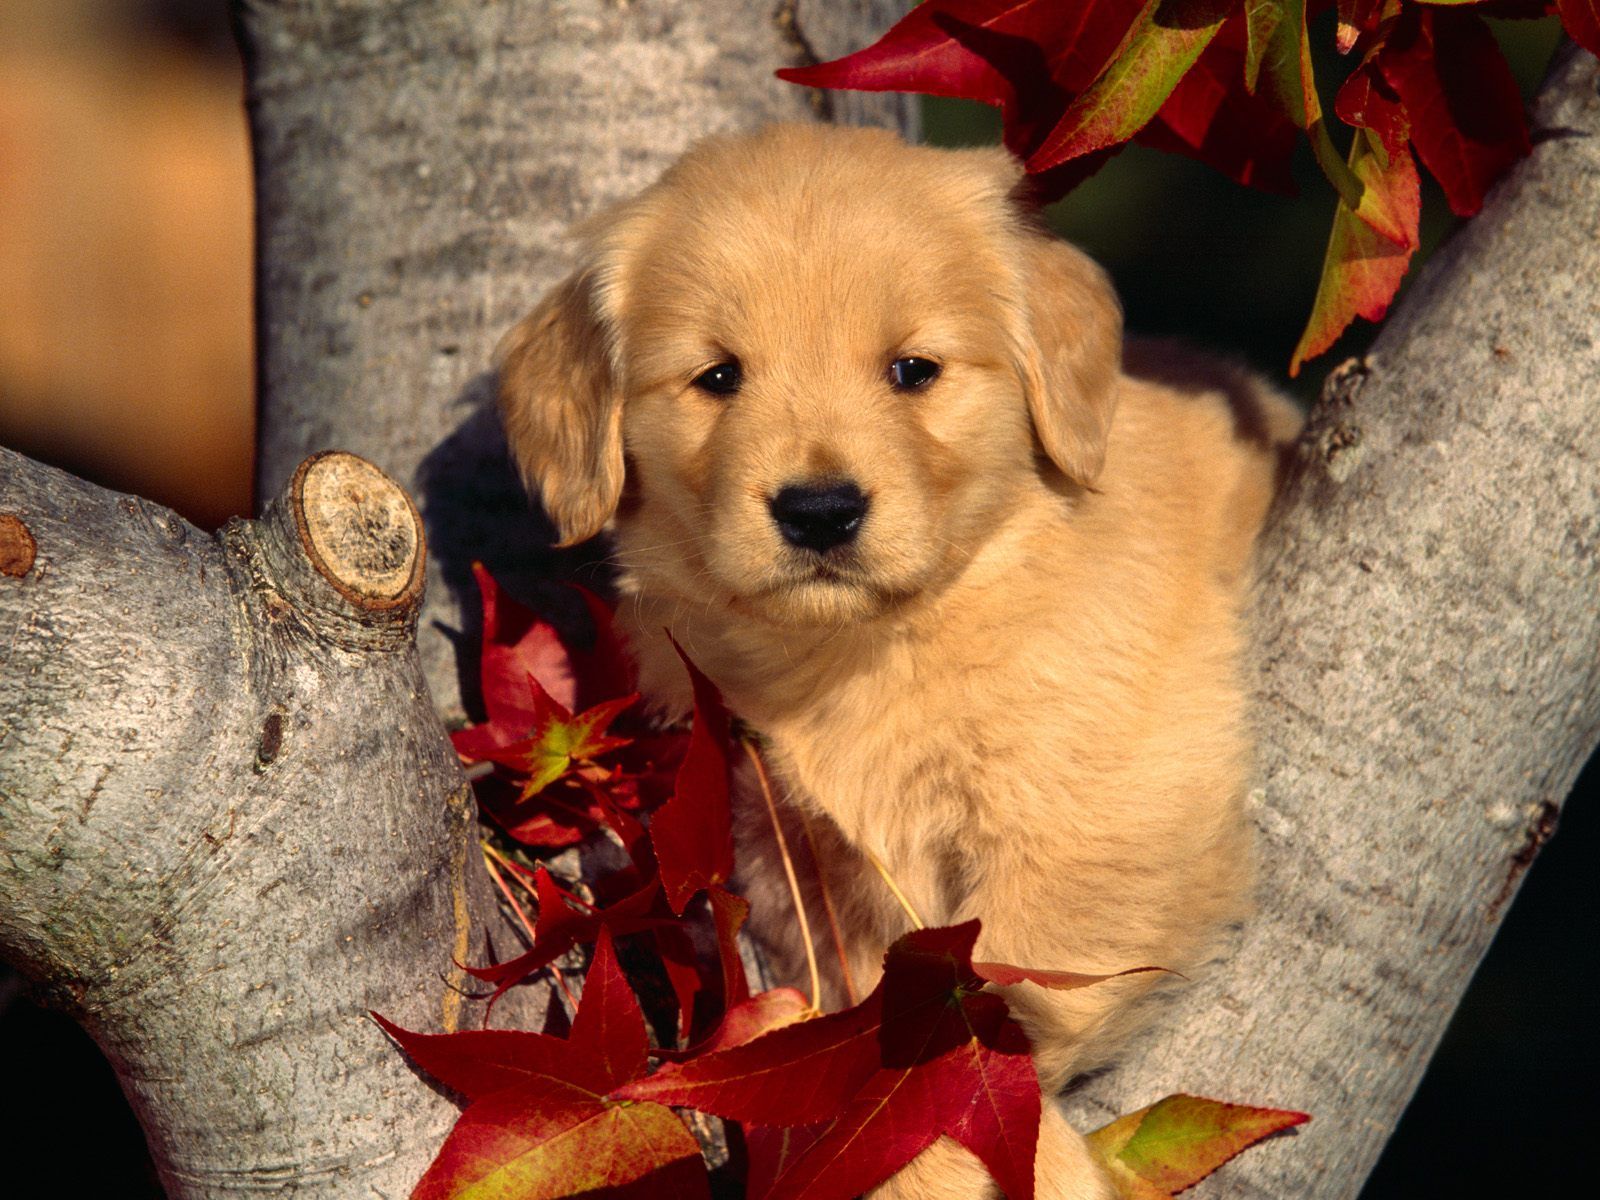 Sweet little puppy on a tree